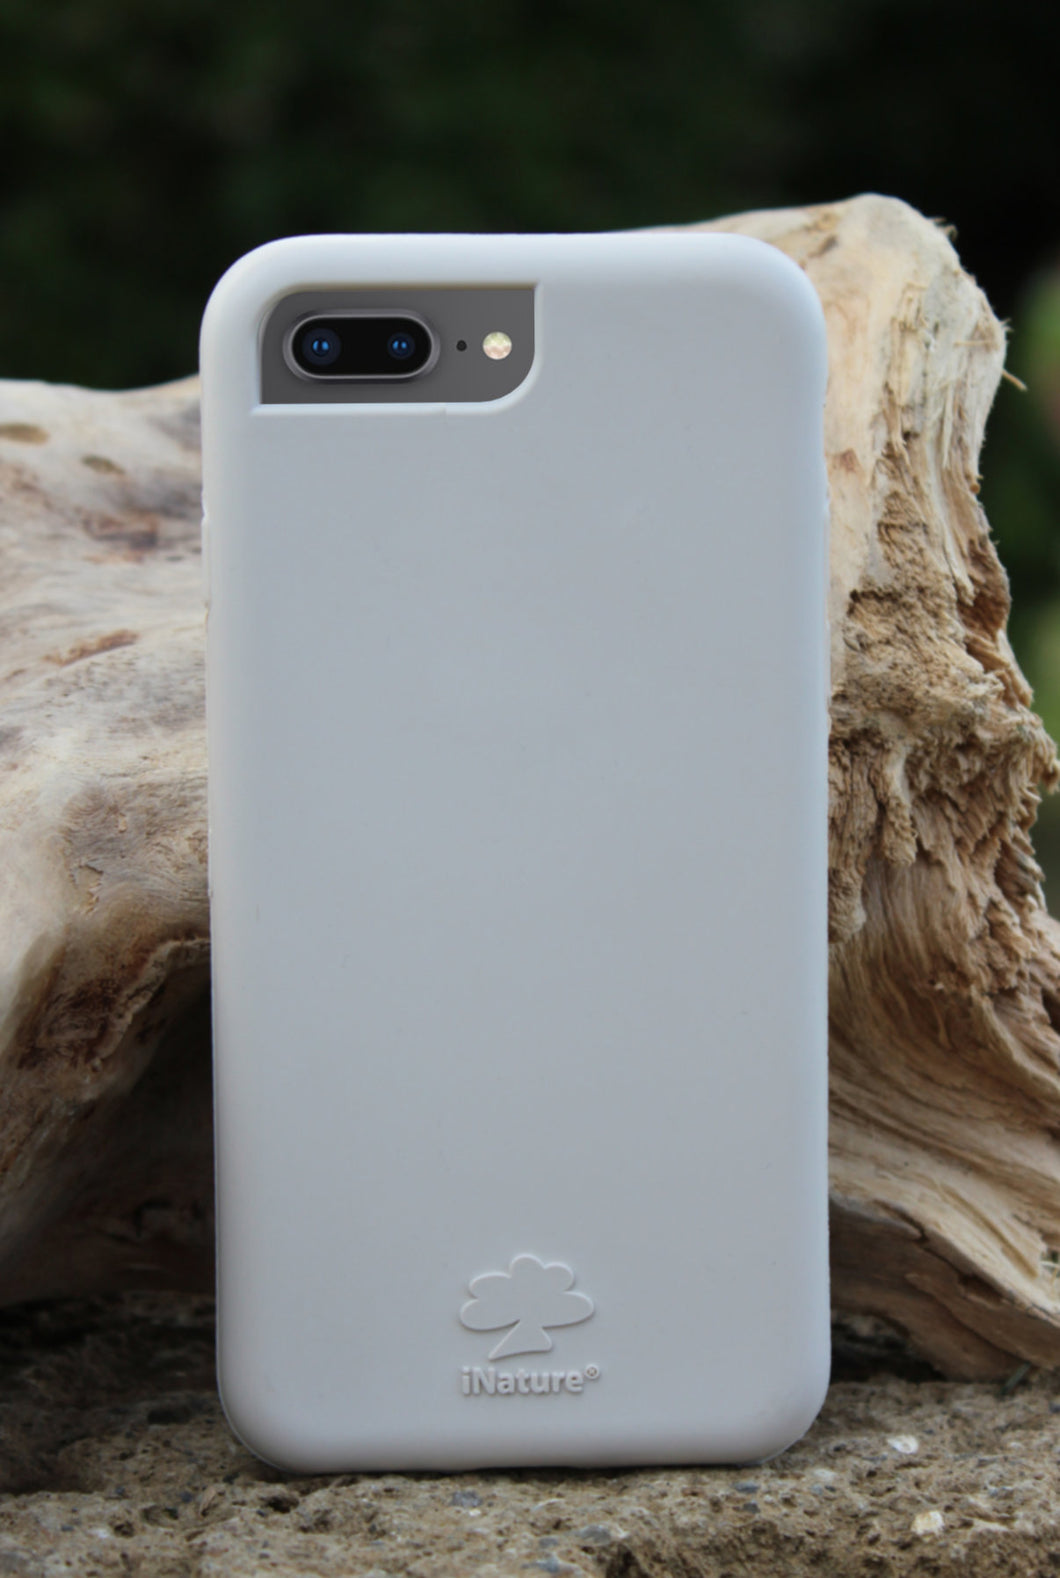 iNature Stone iPhone 7/8 Plus Case